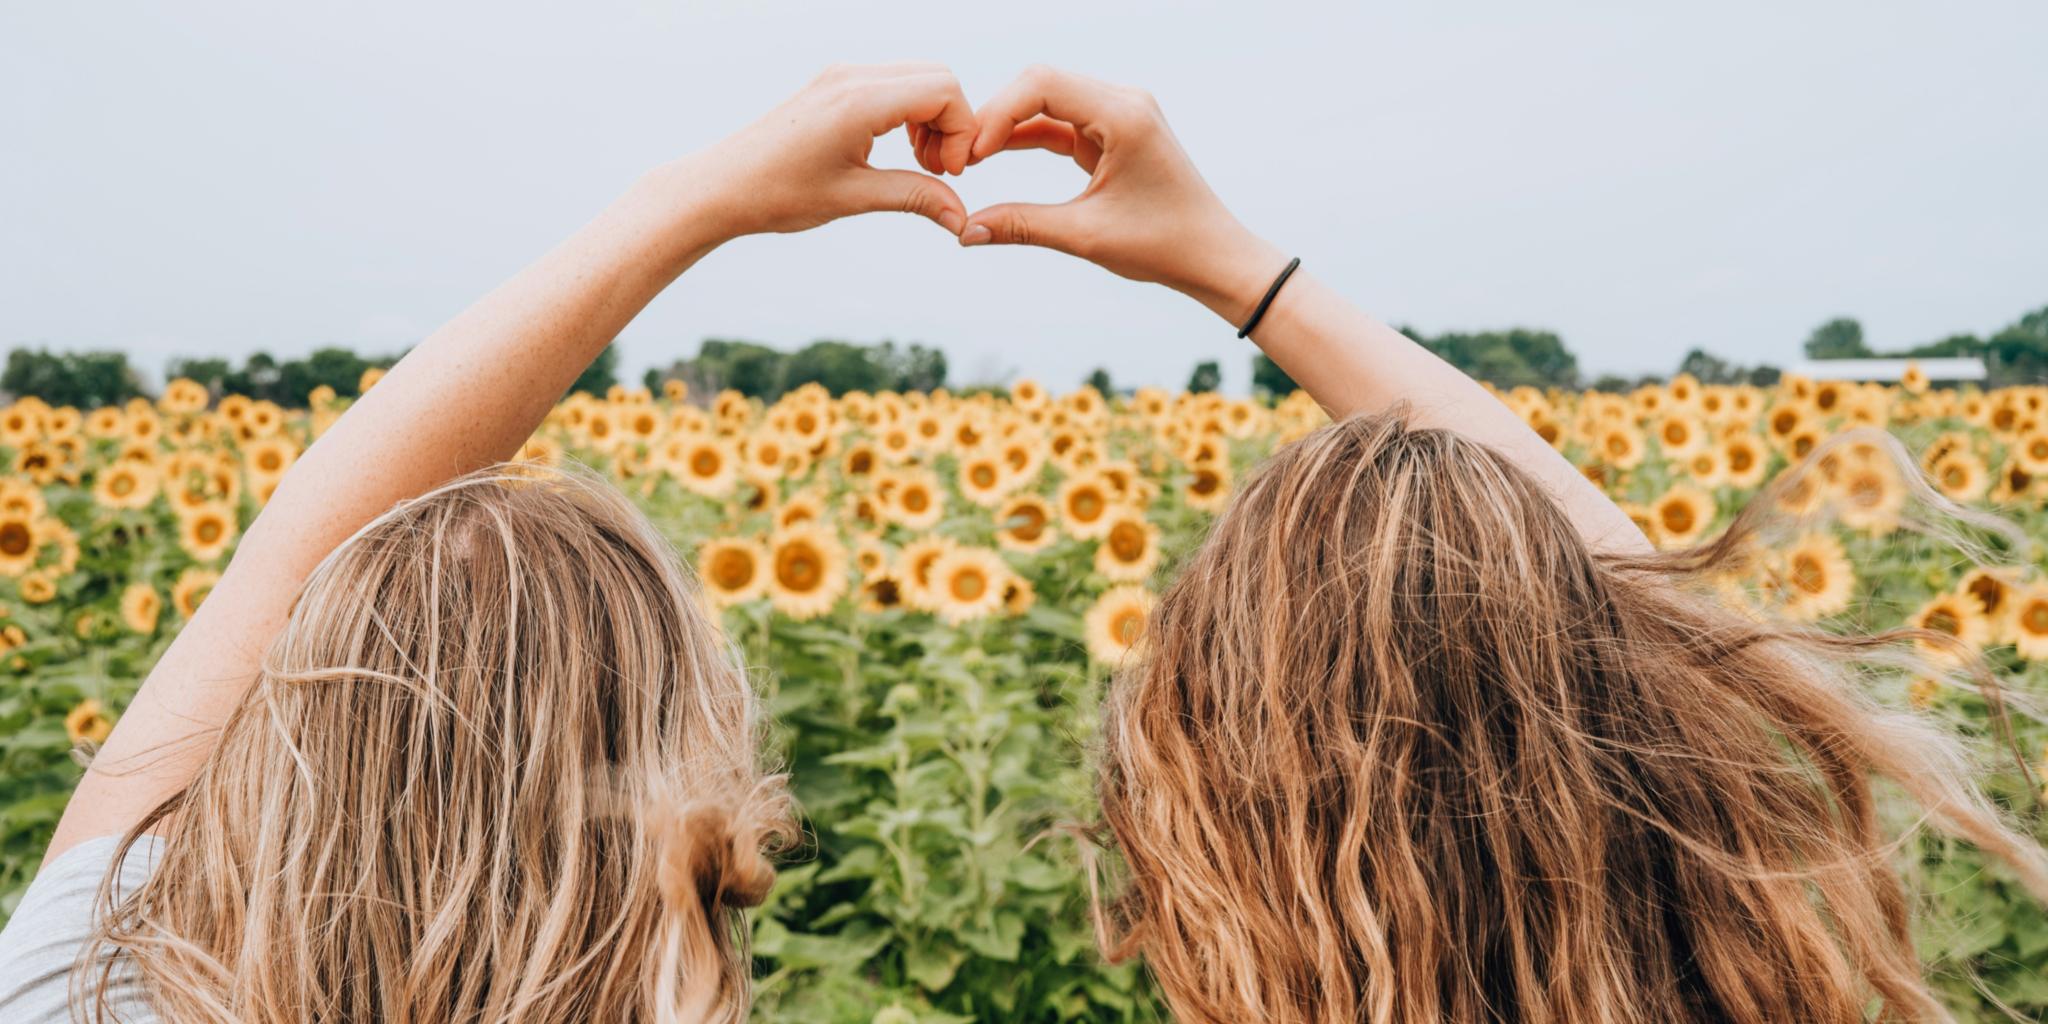 Abgebildet sind zwei Freundinnen in einem Sonnenblumenfeld, die mit ihren Händen ein Herz formen.